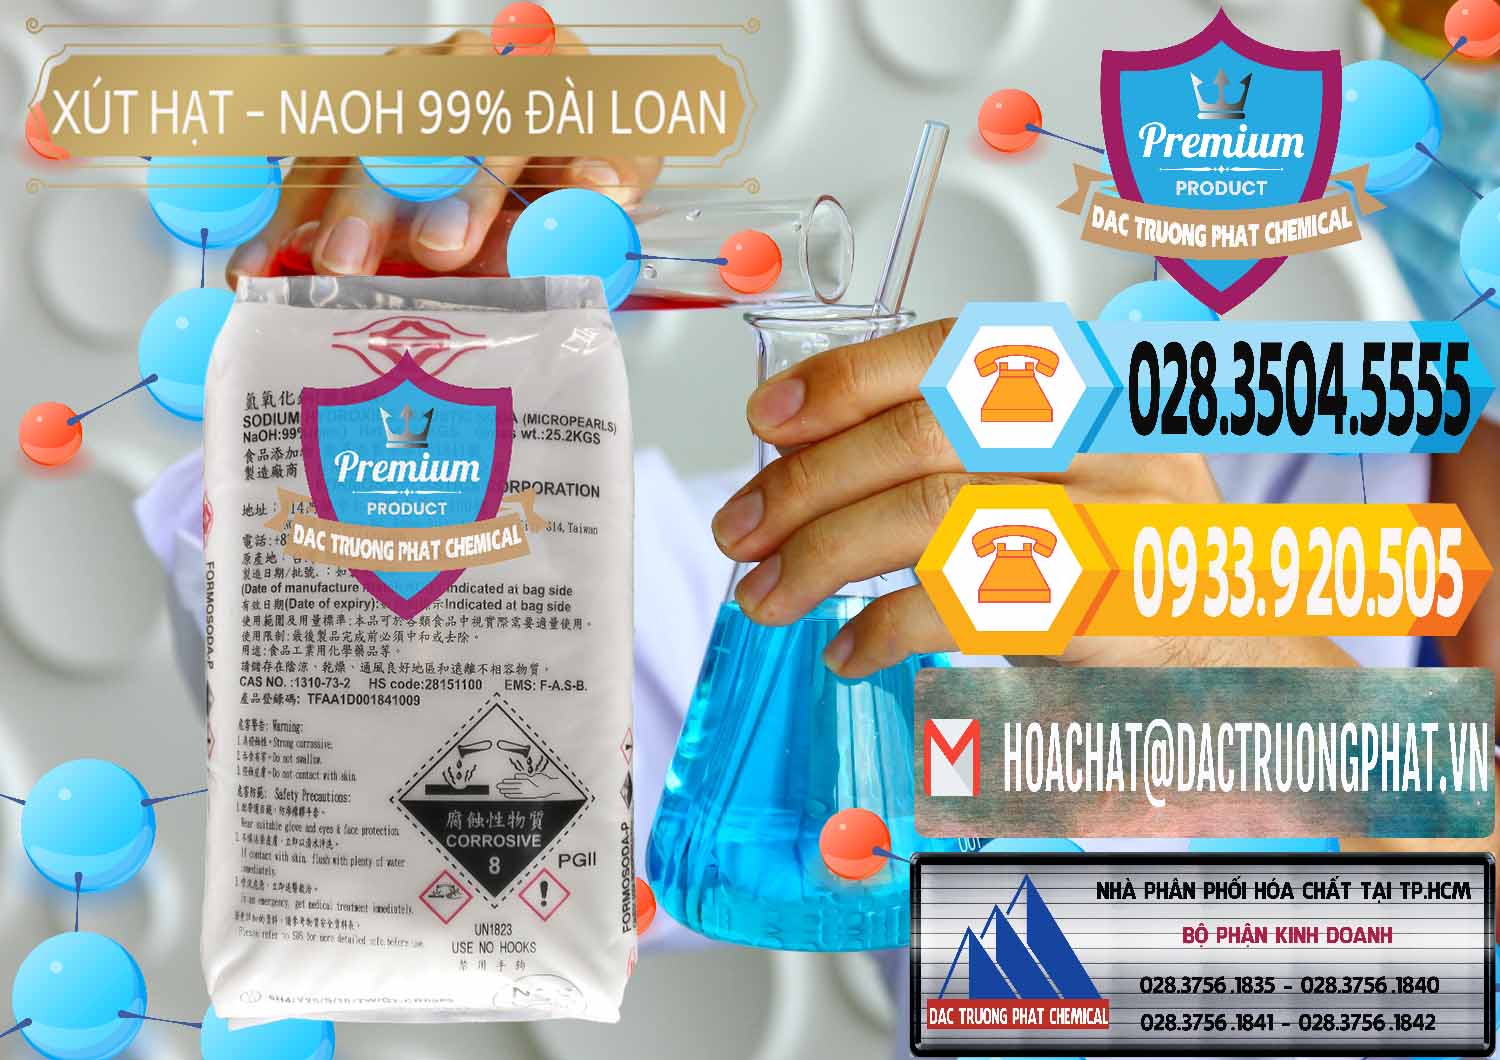 Nơi kinh doanh _ bán Xút Hạt - NaOH Bột 99% Đài Loan Taiwan Formosa - 0167 - Phân phối _ cung cấp hóa chất tại TP.HCM - hoachattayrua.net